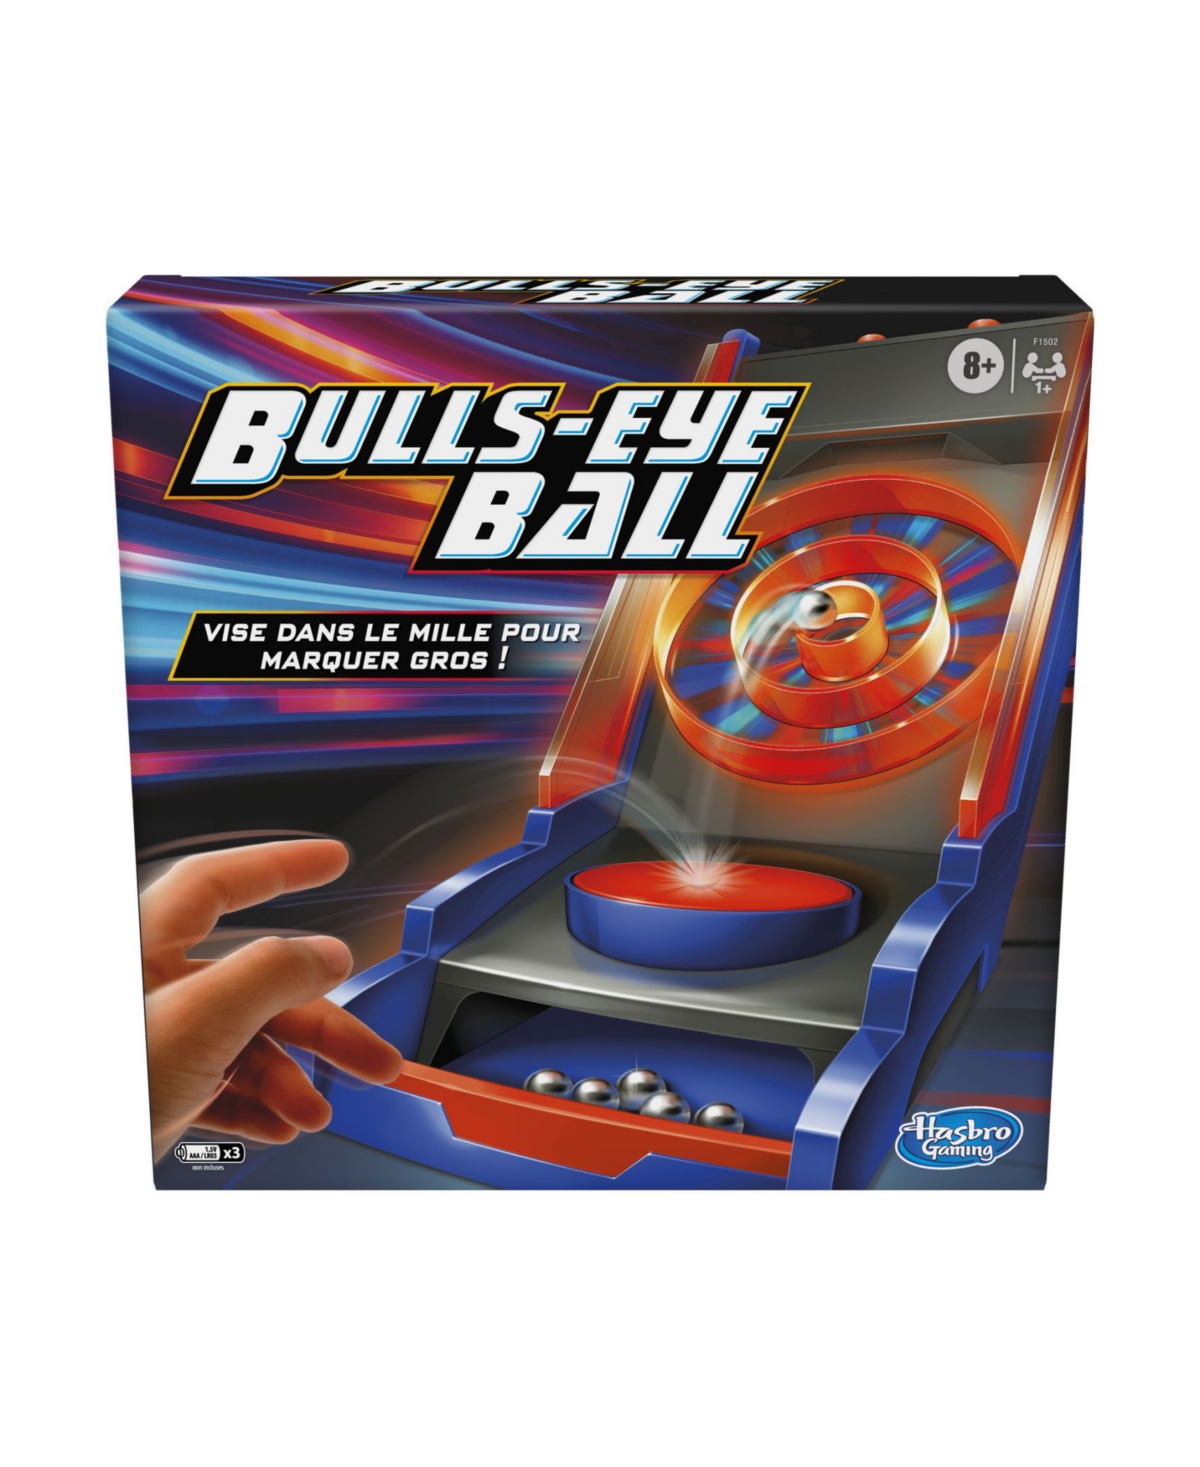 UPC 195166126500 product image for Hasbro Bulls Eye Ball Game, Set of 9 | upcitemdb.com